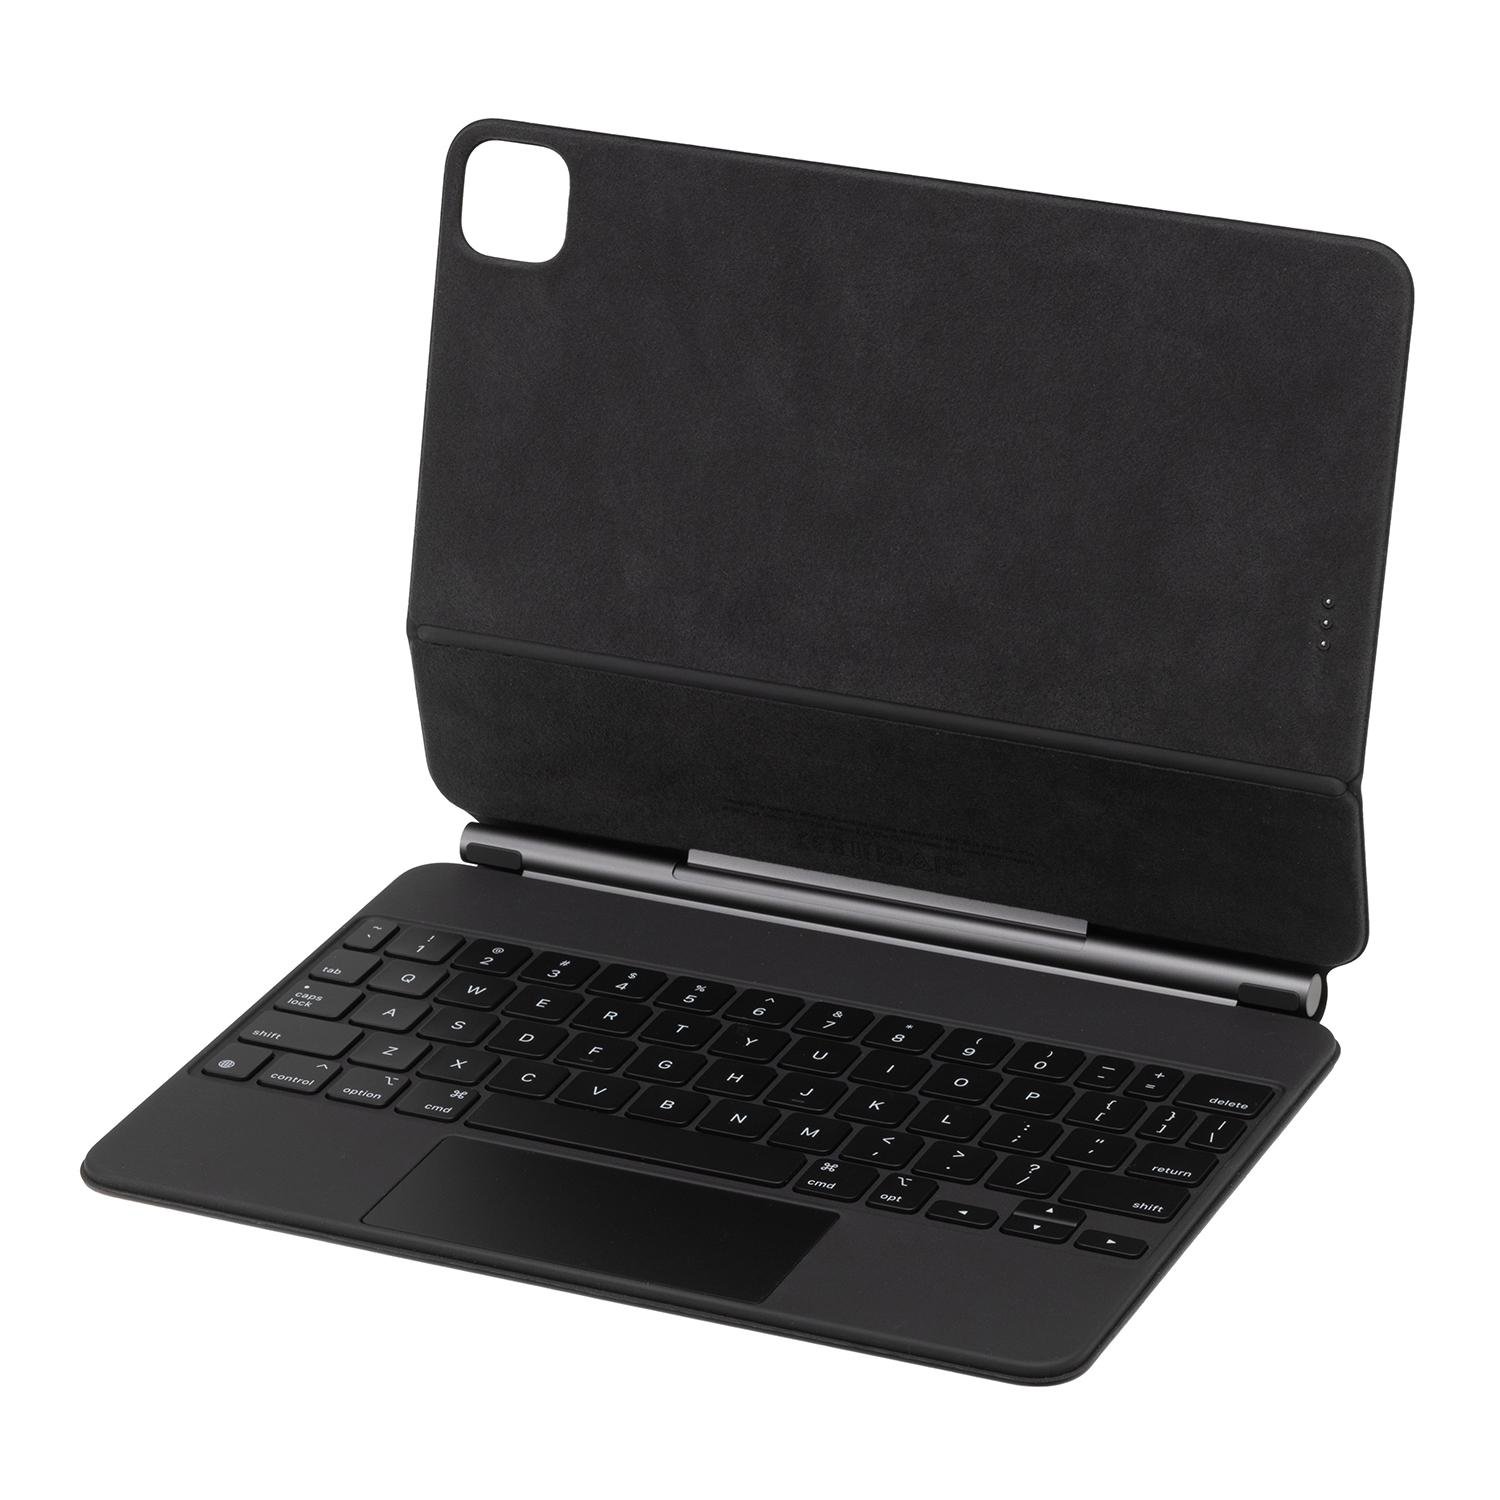 Apple MXQT2LL/A Magic Keyboard with Trackpad... at MacSales.com